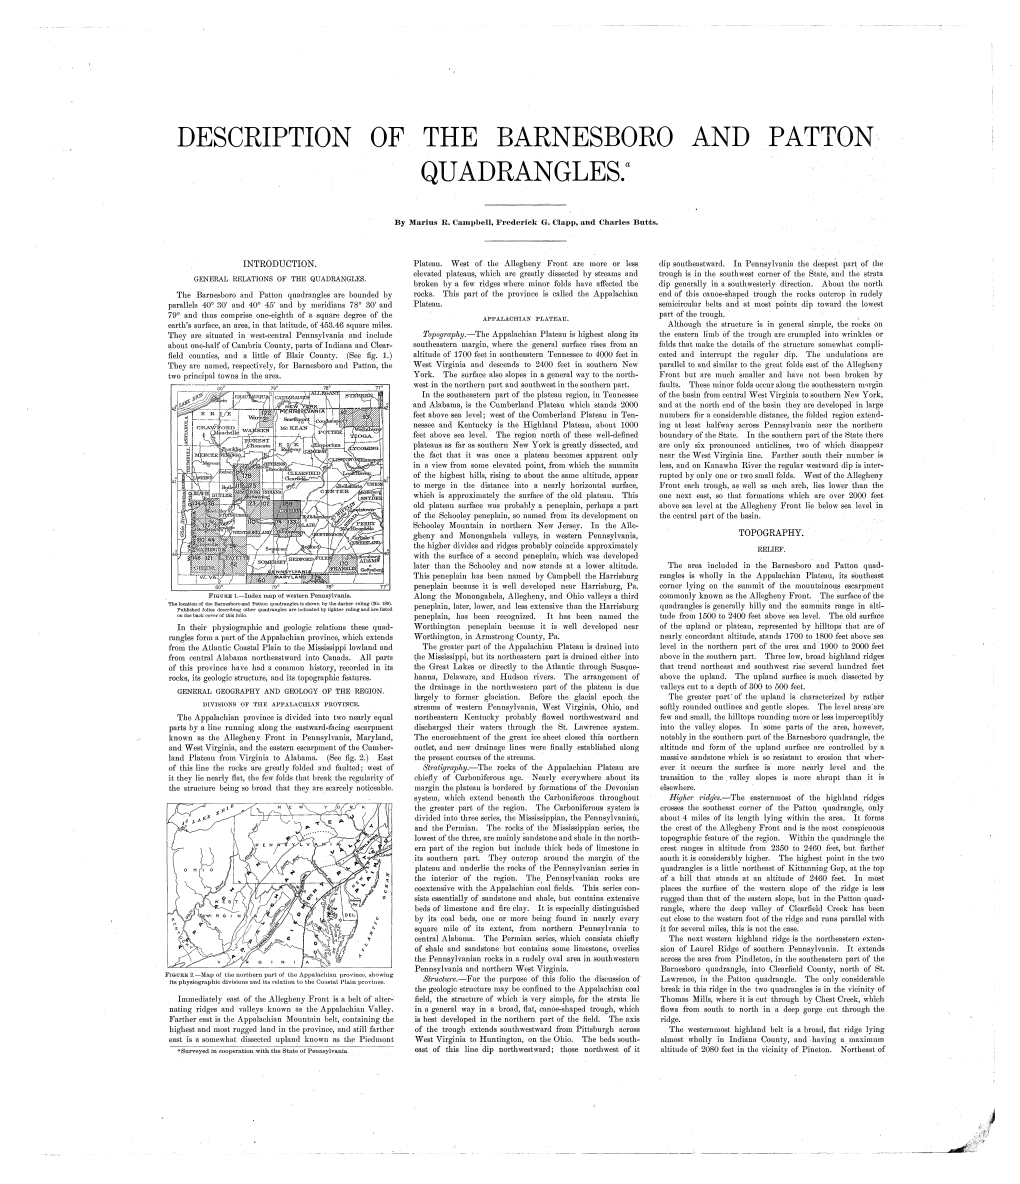 Description of the Barnesboro and Patton Quadrangles